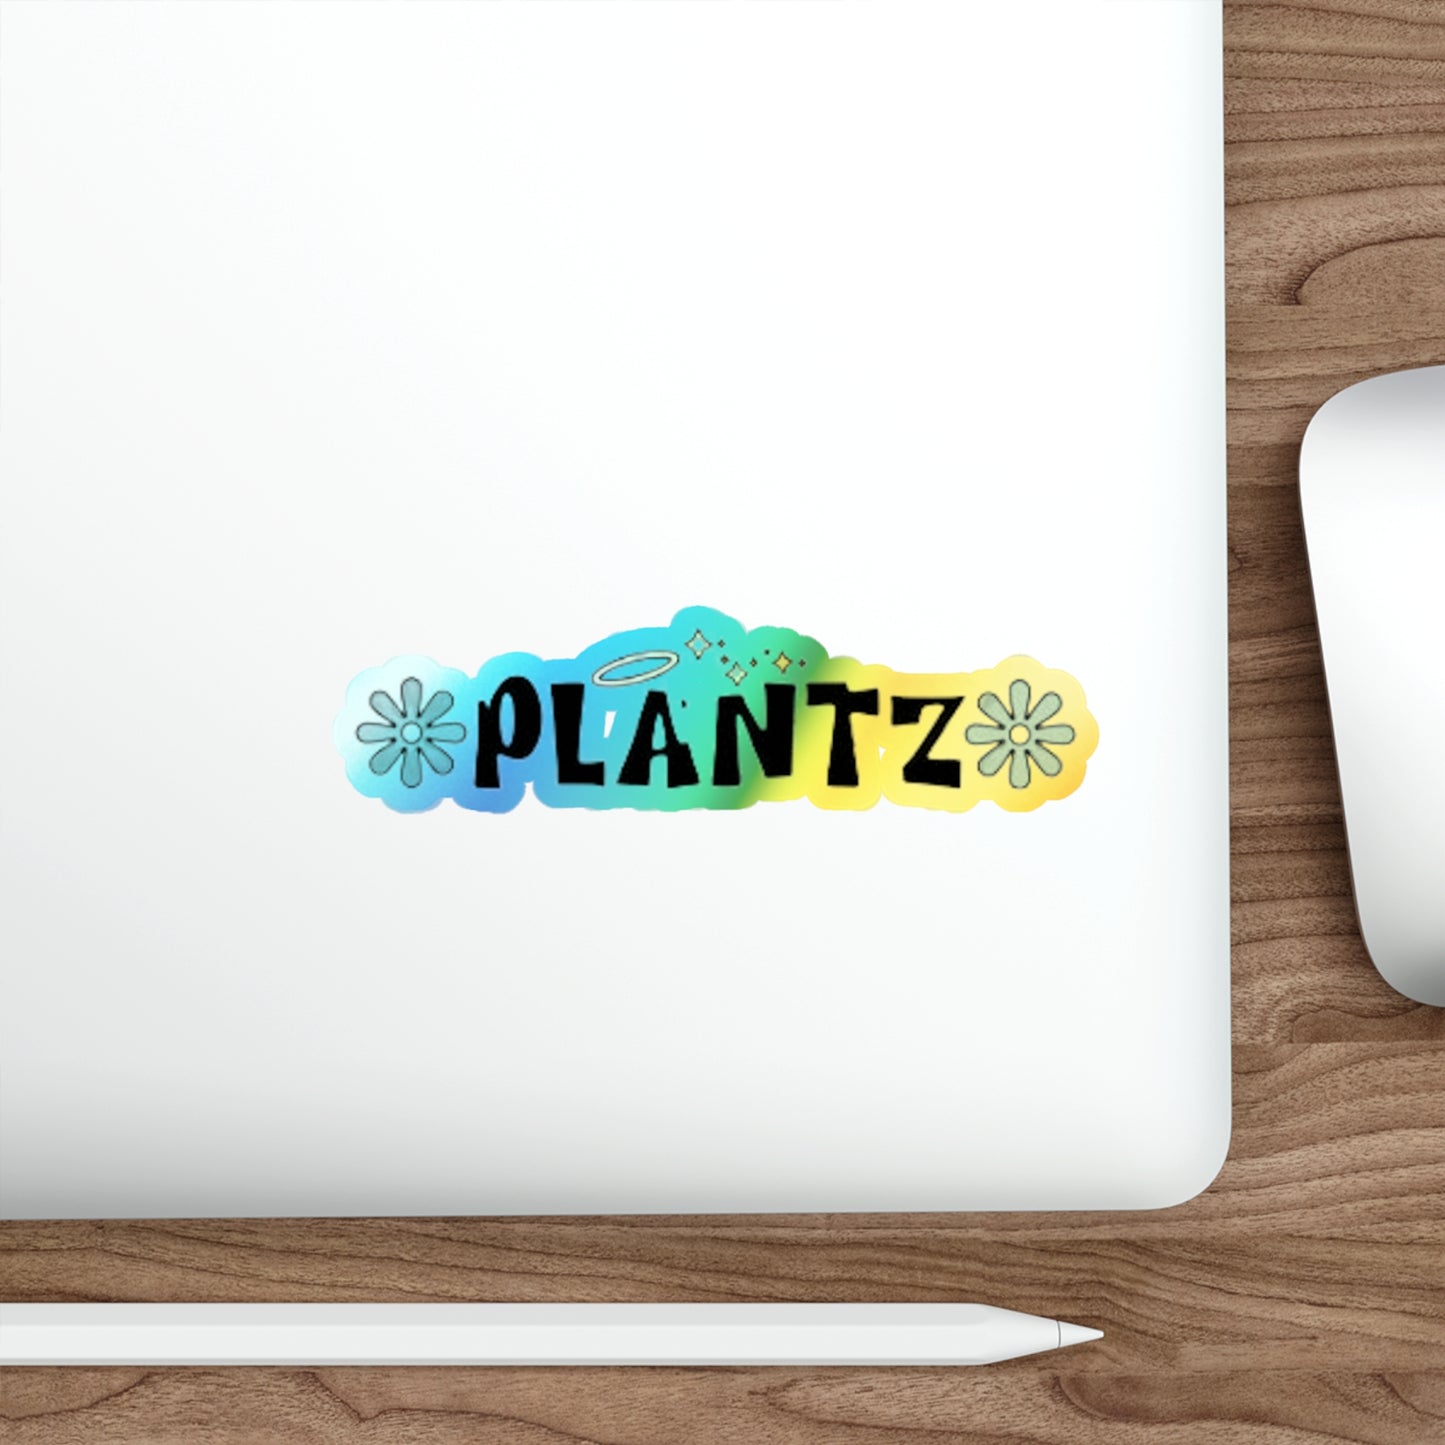 Plant Bratz Holographic Stickers